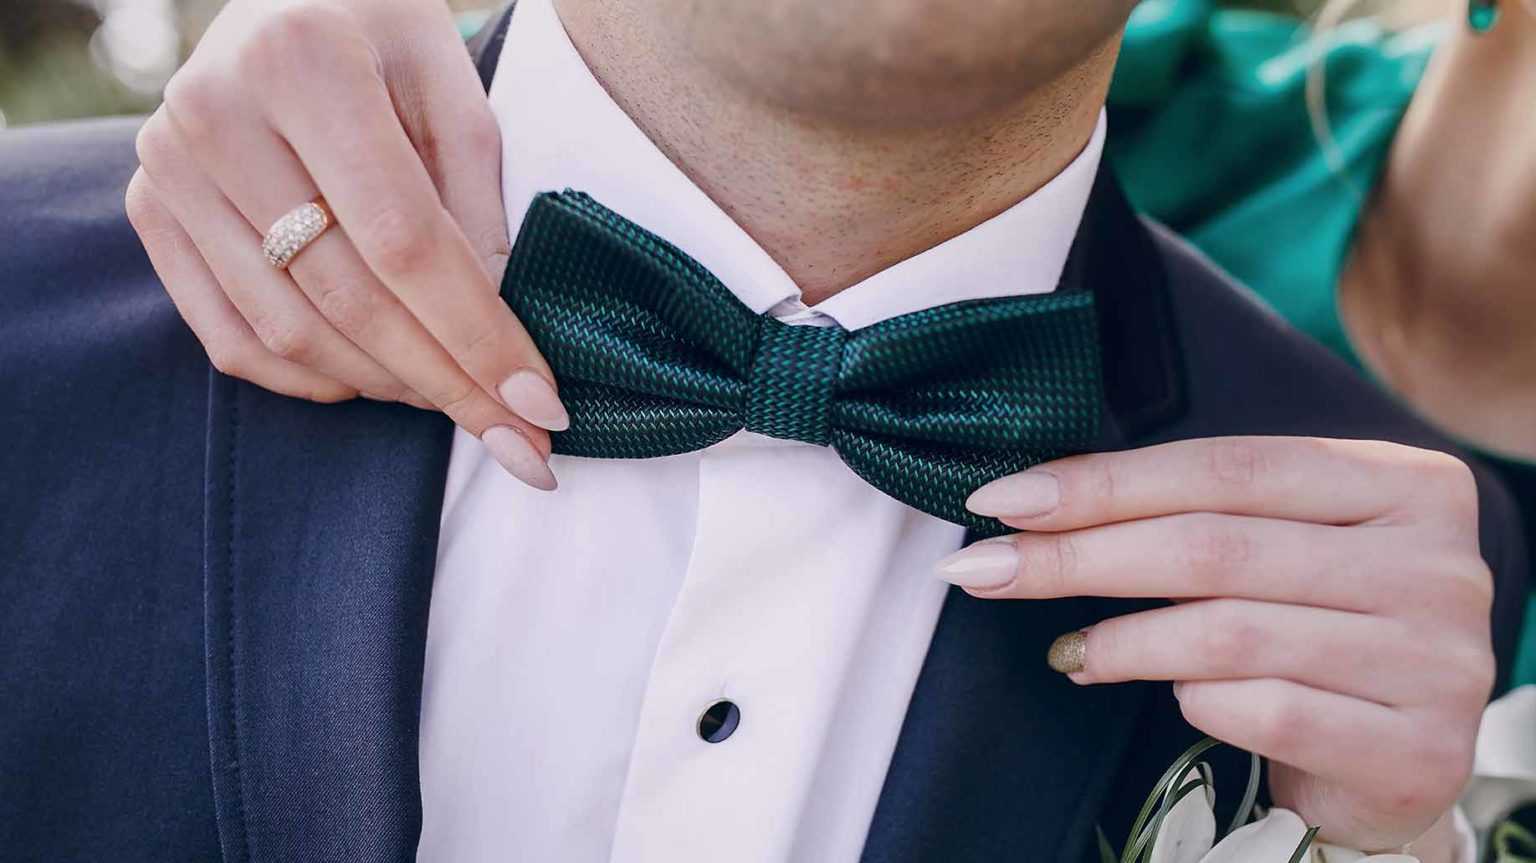 Свадебный костюм жениха 2021: что в моде?